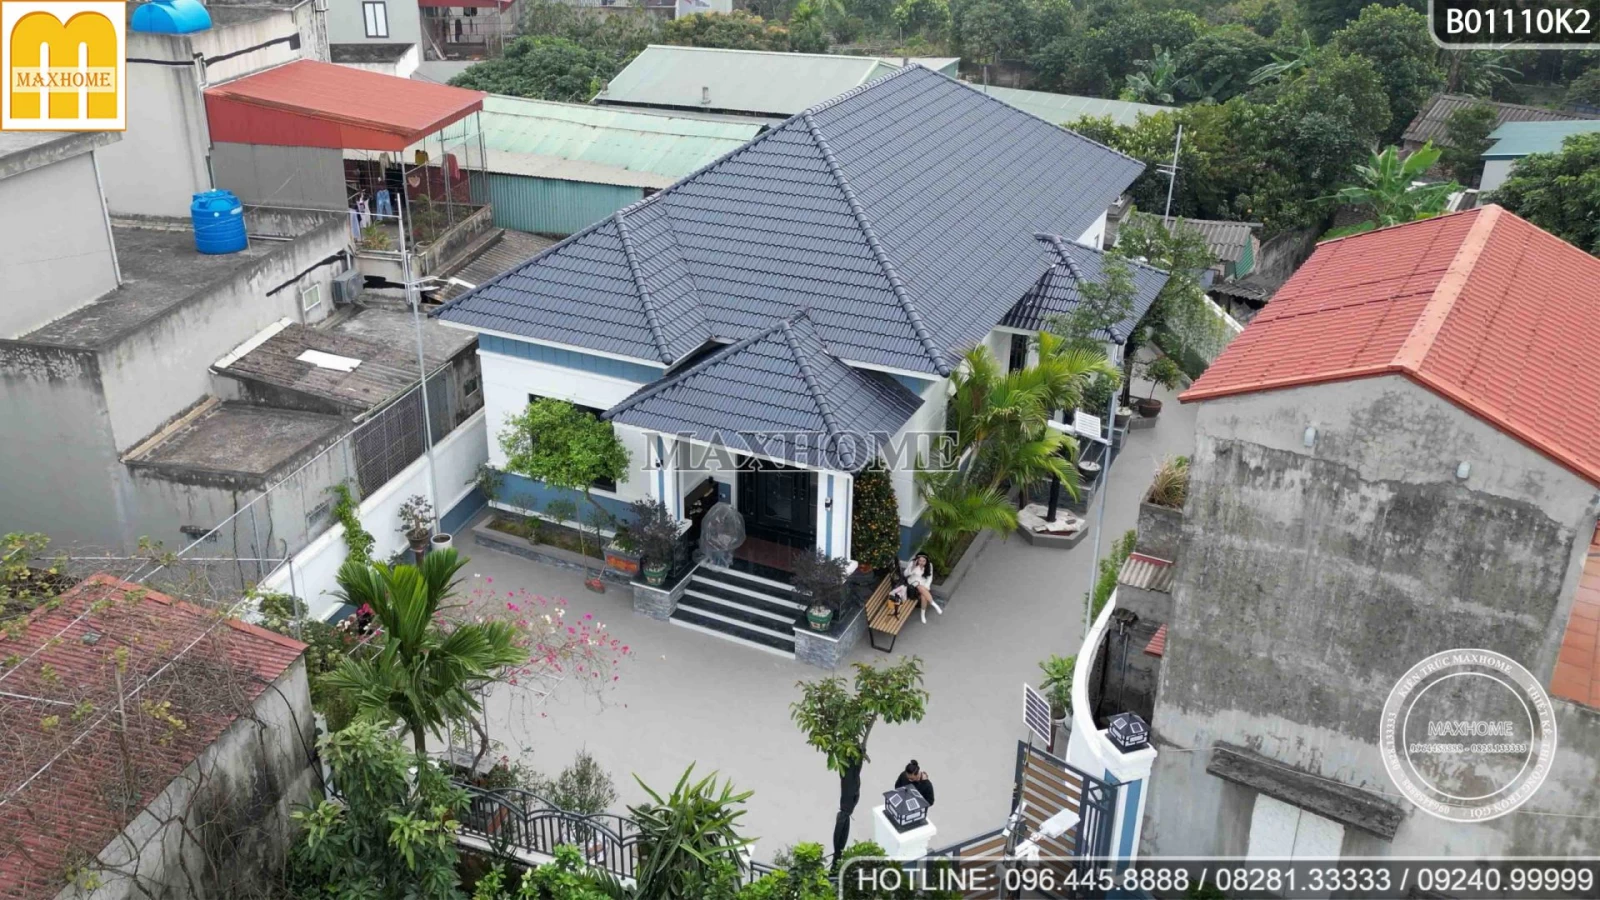 Thi công trọn gói nhà ở 1 tầng 145m2 rẻ, đẹp bất ngờ tại Thái Bình | MH02883